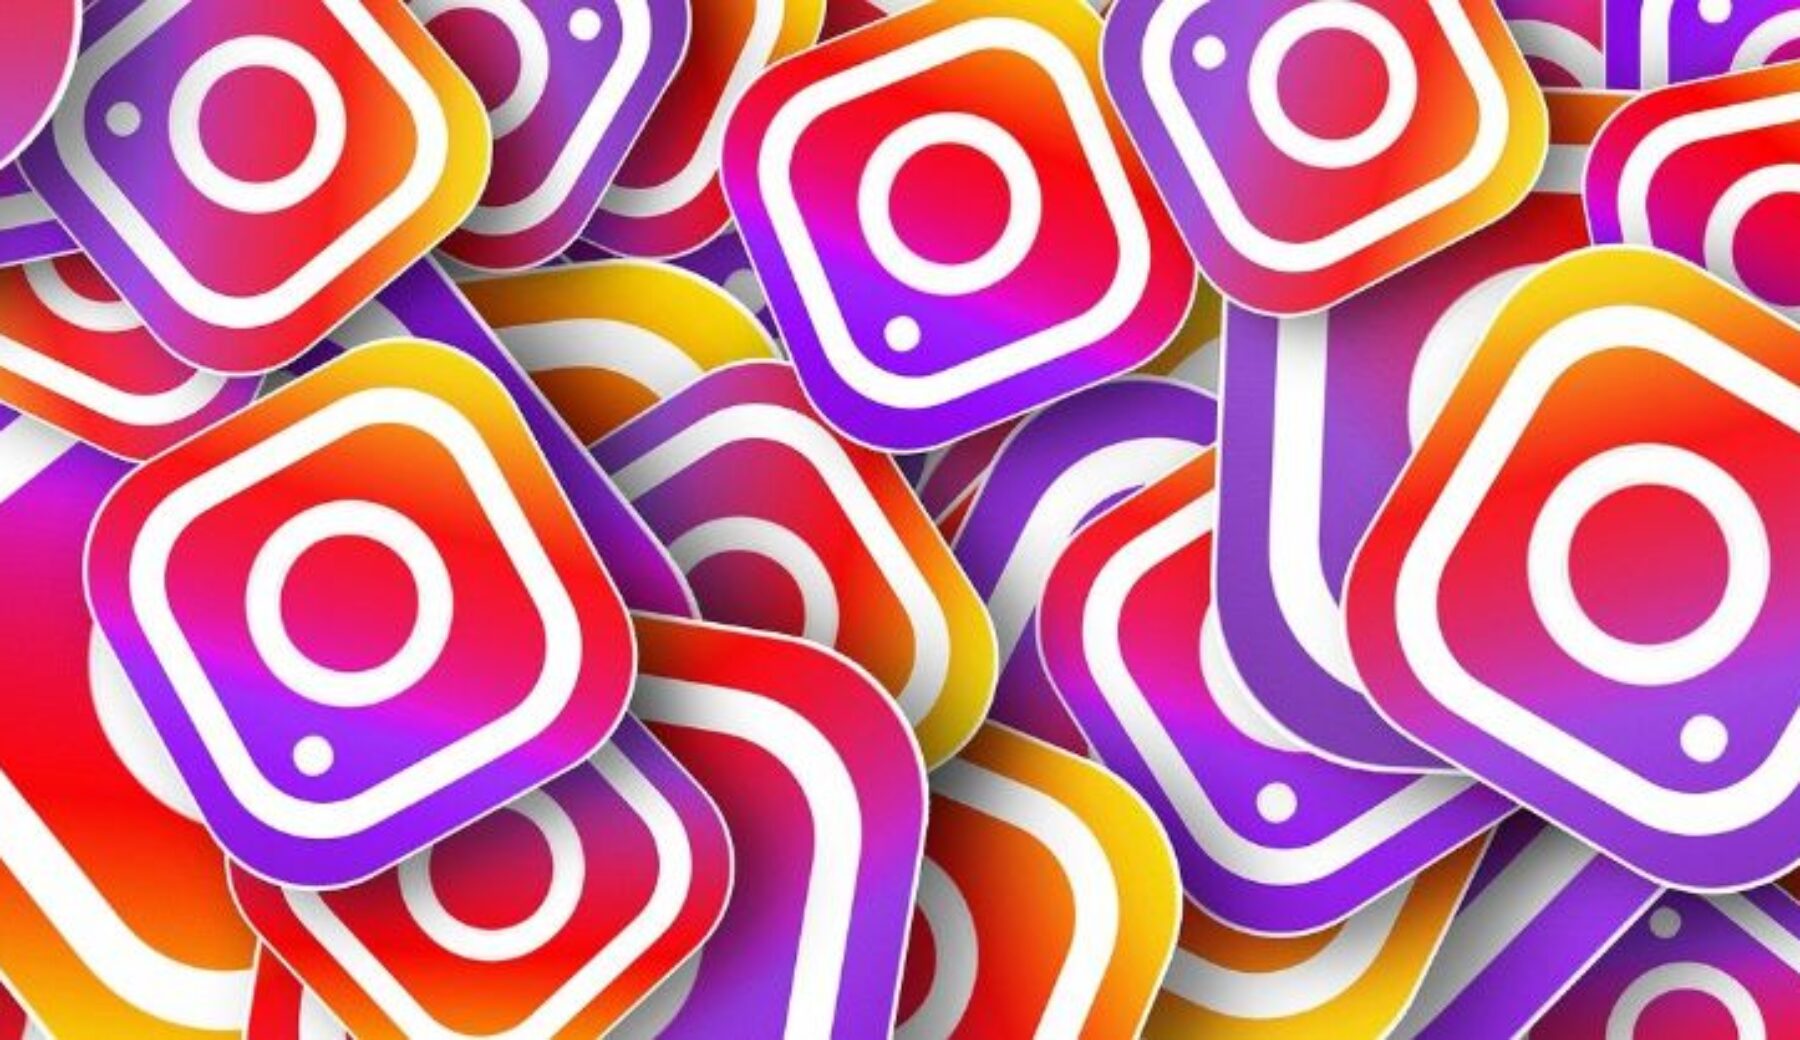 Instagram festeggia 10 anni, icone a scelta per gli utenti